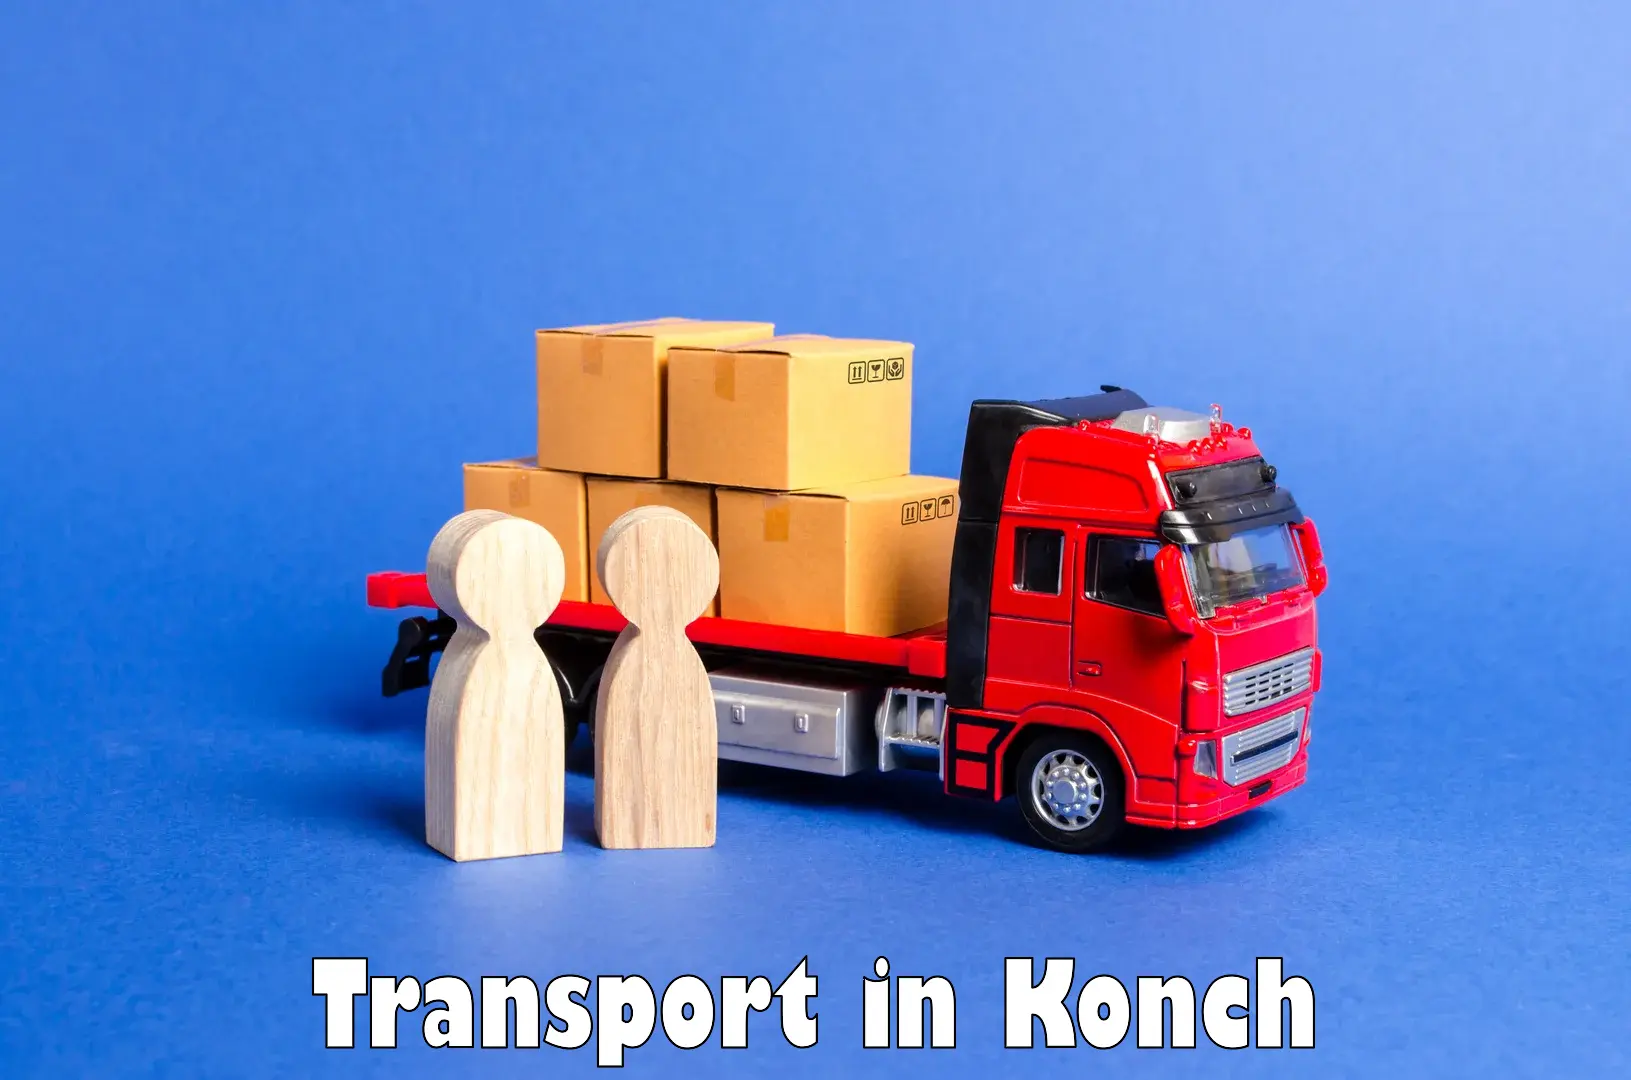 Furniture transport service in Konch